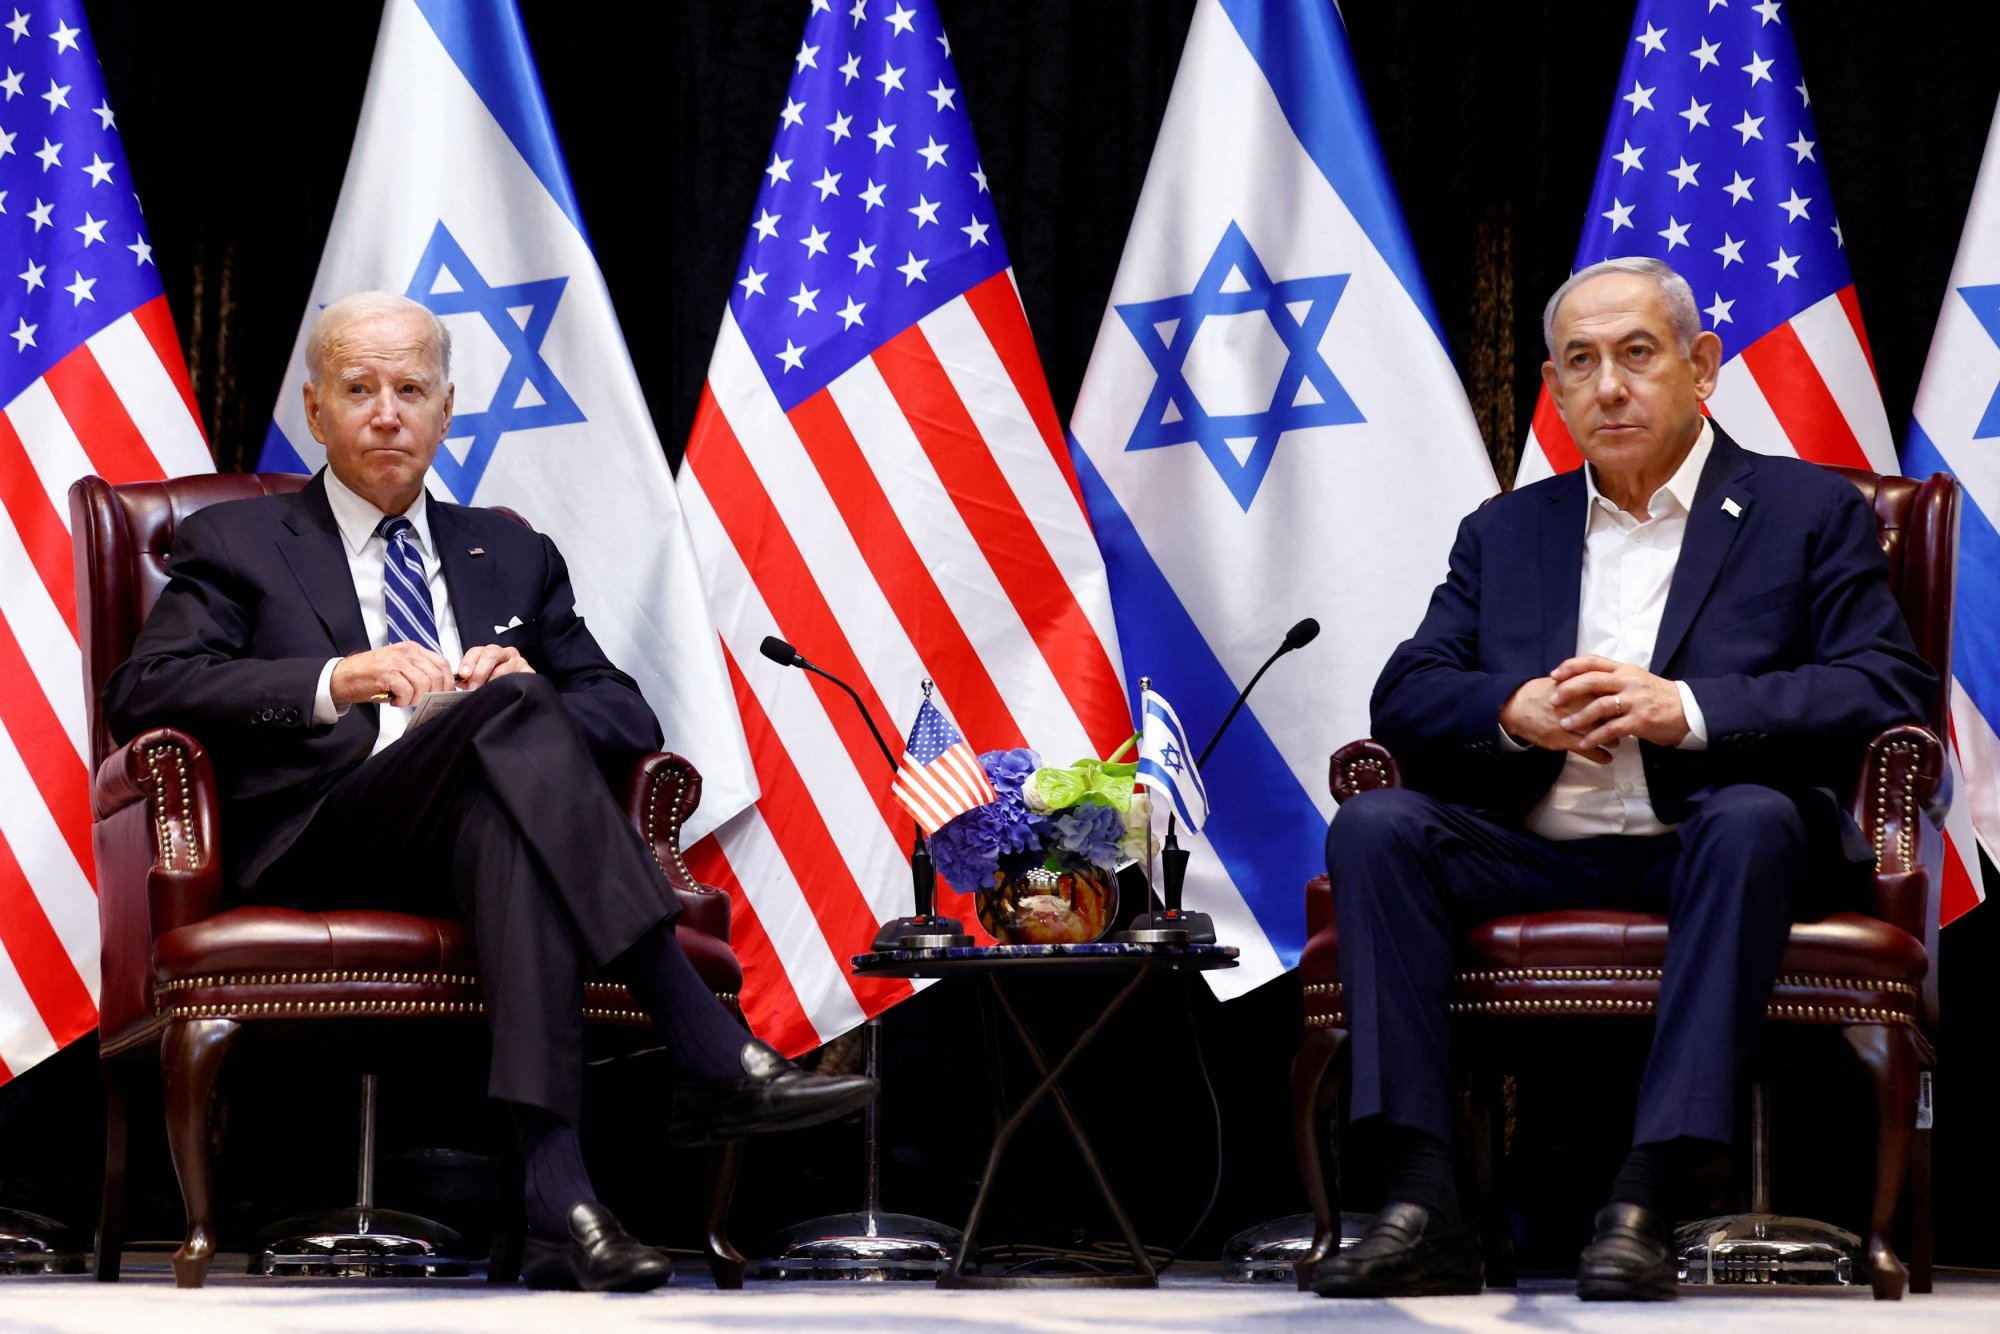 Ισραήλ: Η πρόταση Μπάιντεν «δεν είναι μια καλή συμφωνία», αλλά την αποδεχόμαστε, λέει σύμβουλος του Νετανιάχου